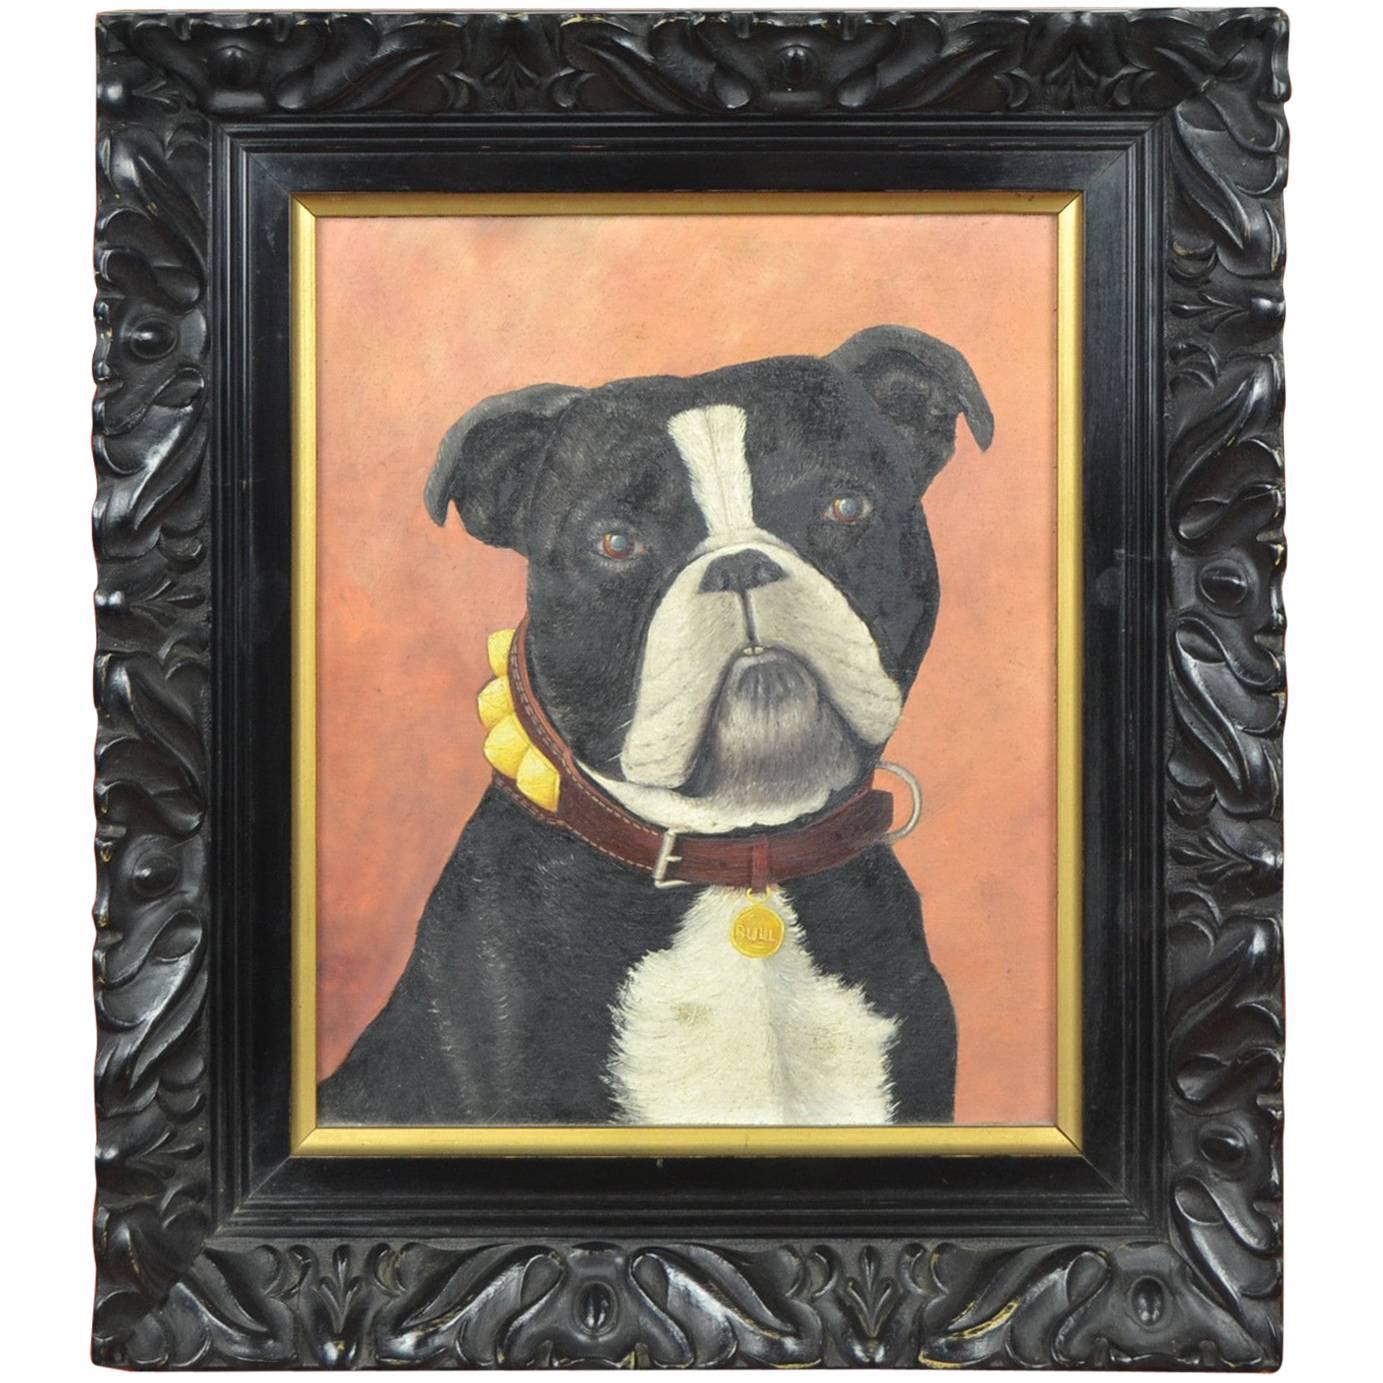 Vintage Black Framed Bulldog Painting on Wood